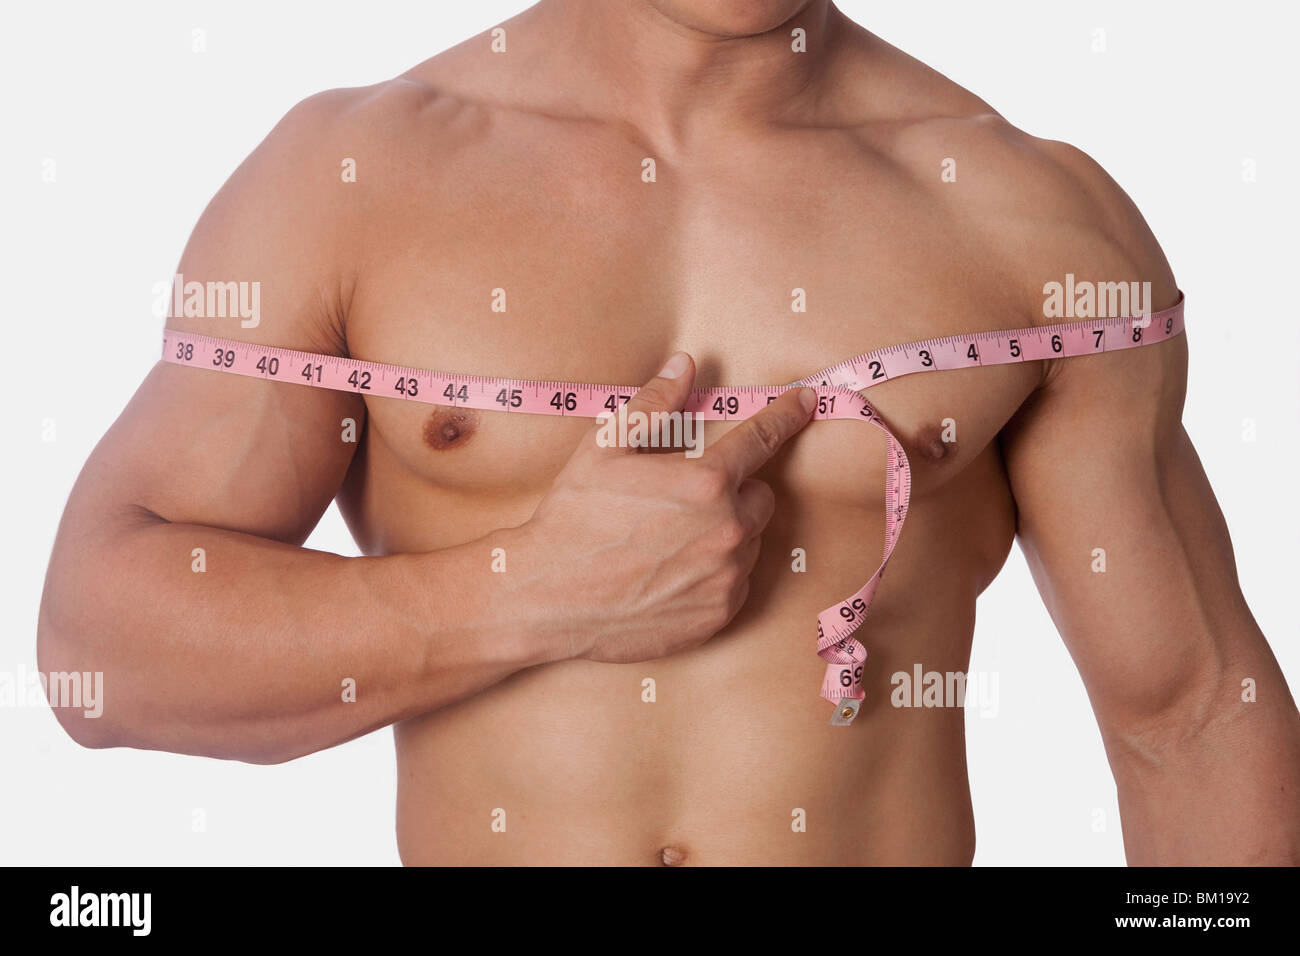 как правильно измерить объем груди у мужчин фото 3